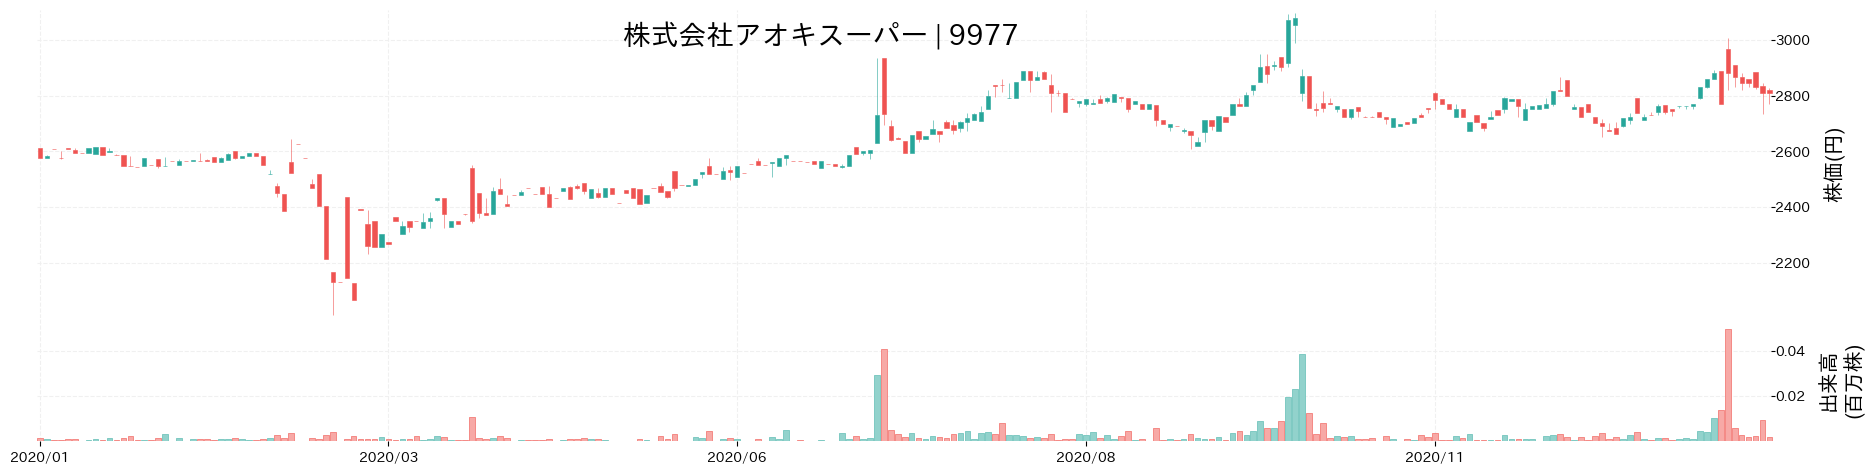 アオキスーパーの株価推移(2020)